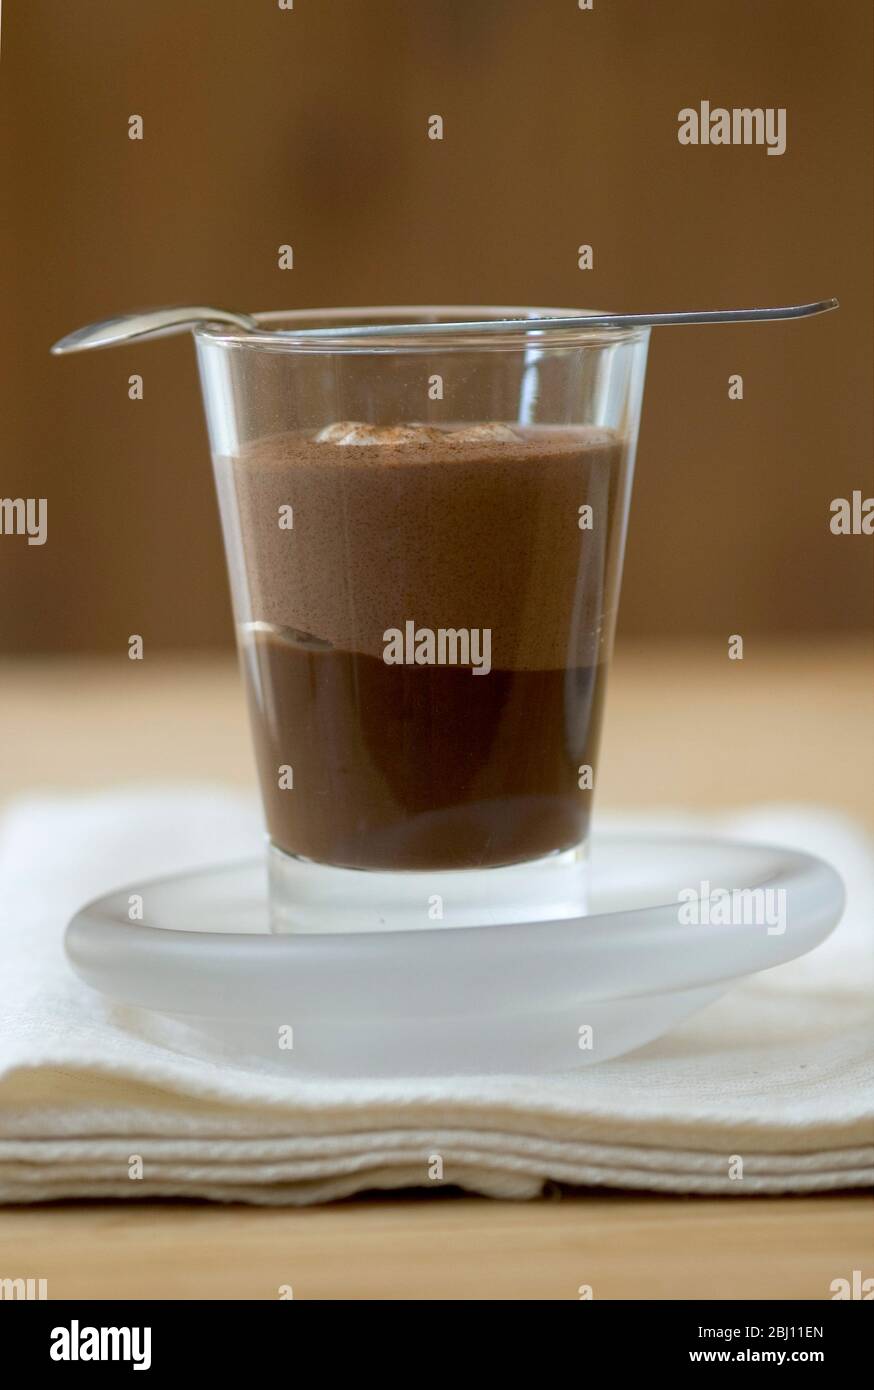 Schokolade Mokka geschichteten Dessert in Glas Becher mit Teelöffel auf der Oberseite - Stockfoto